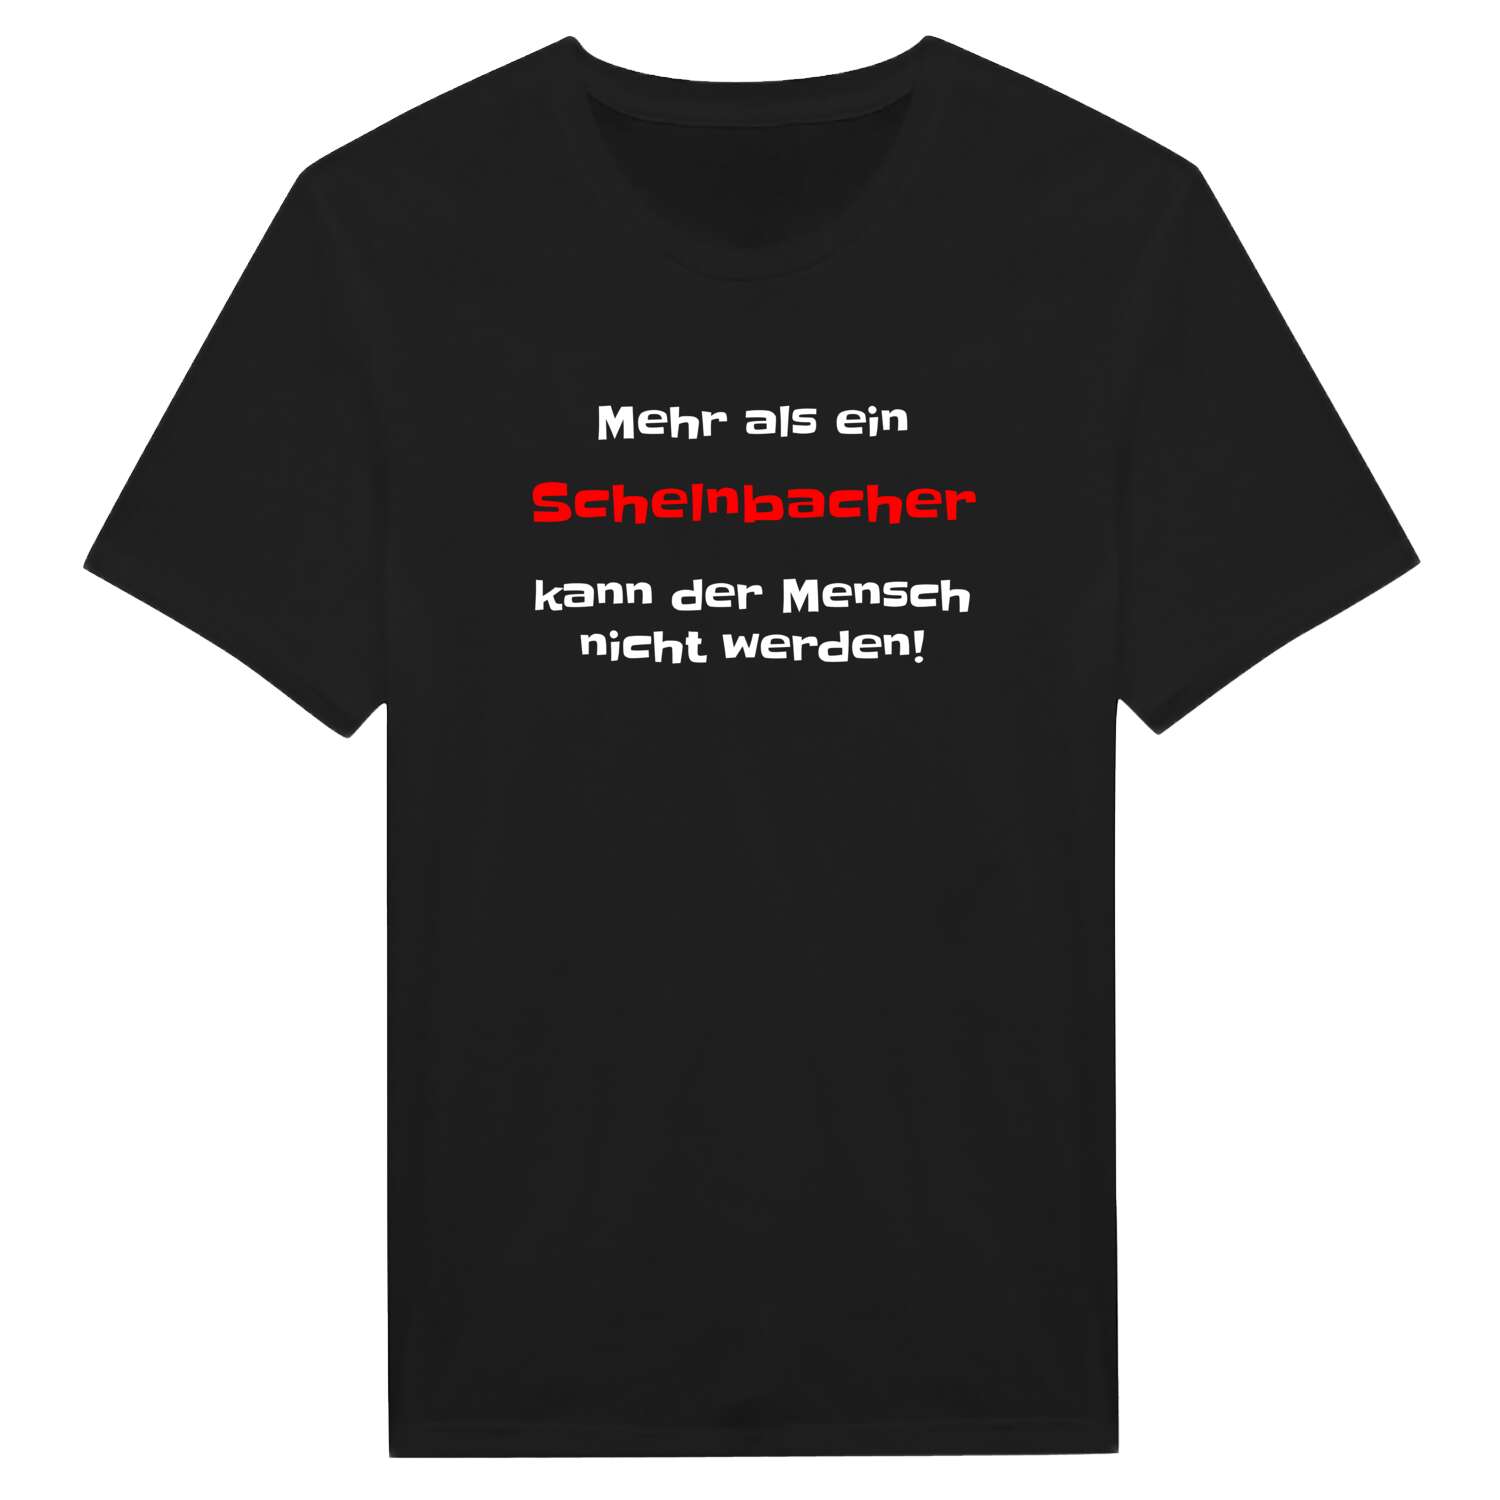 Schelnbach T-Shirt »Mehr als ein«